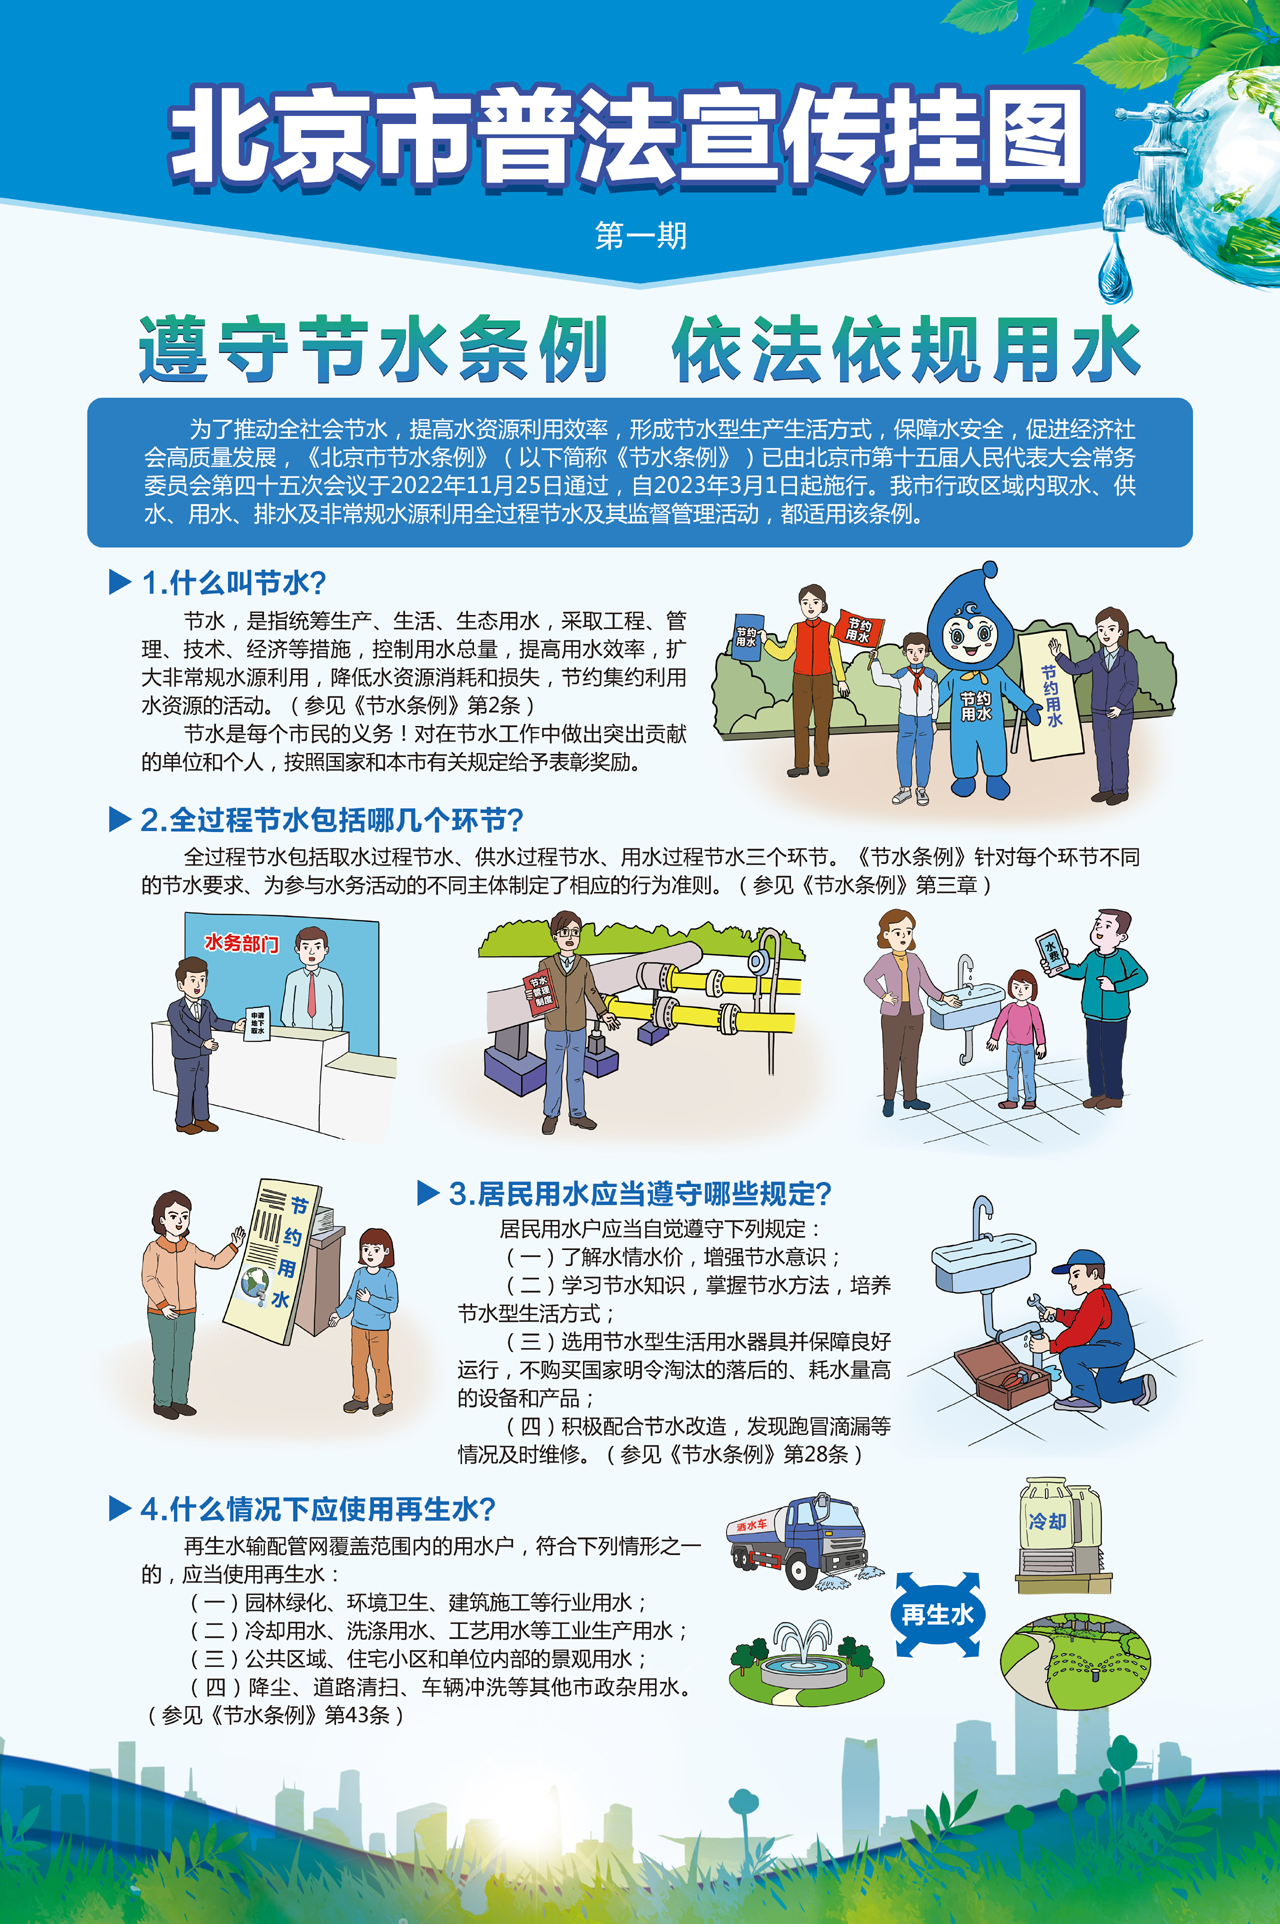 北京市普法宣传挂图第一期-1